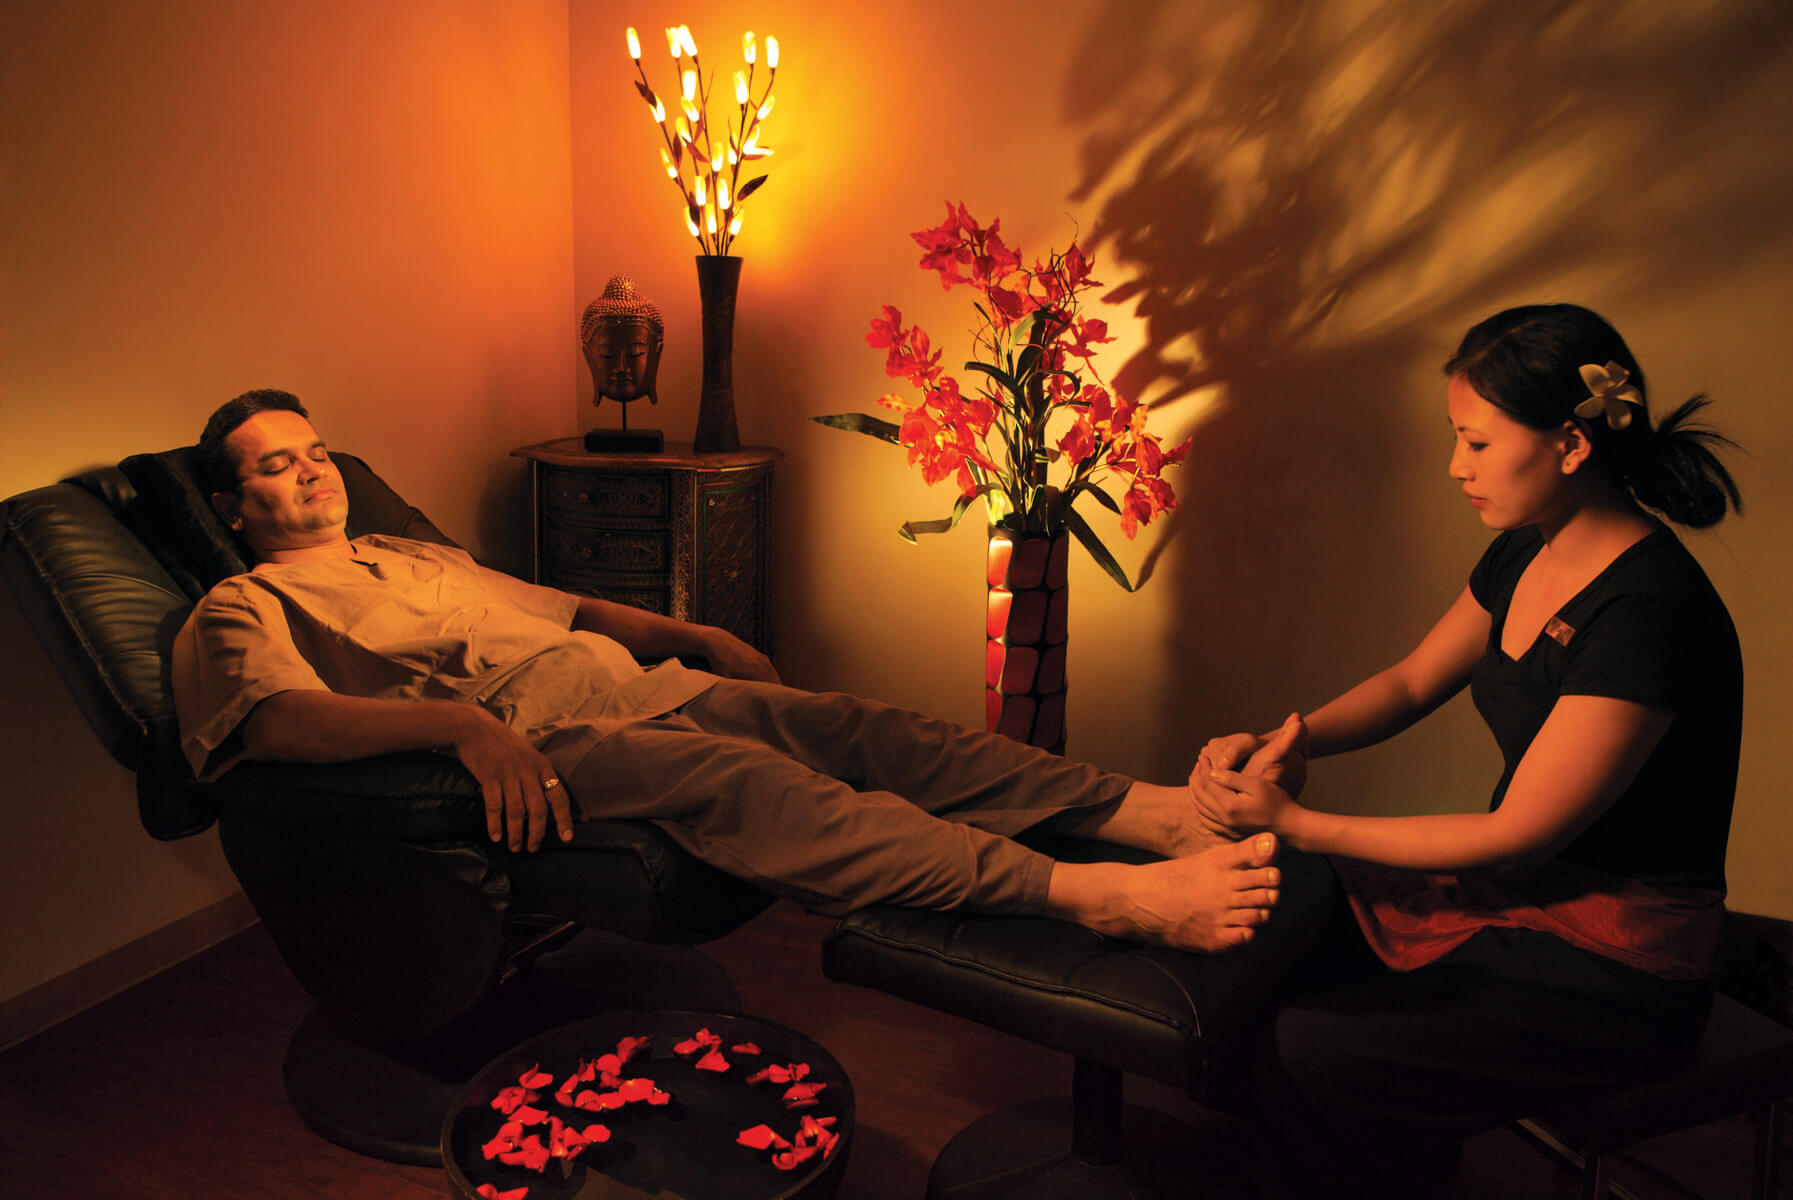 Ли массаж лингама. Тайский массаж ног. Свидание в Тайланде ТАЙРАЙ. Мужской массаж лингама.